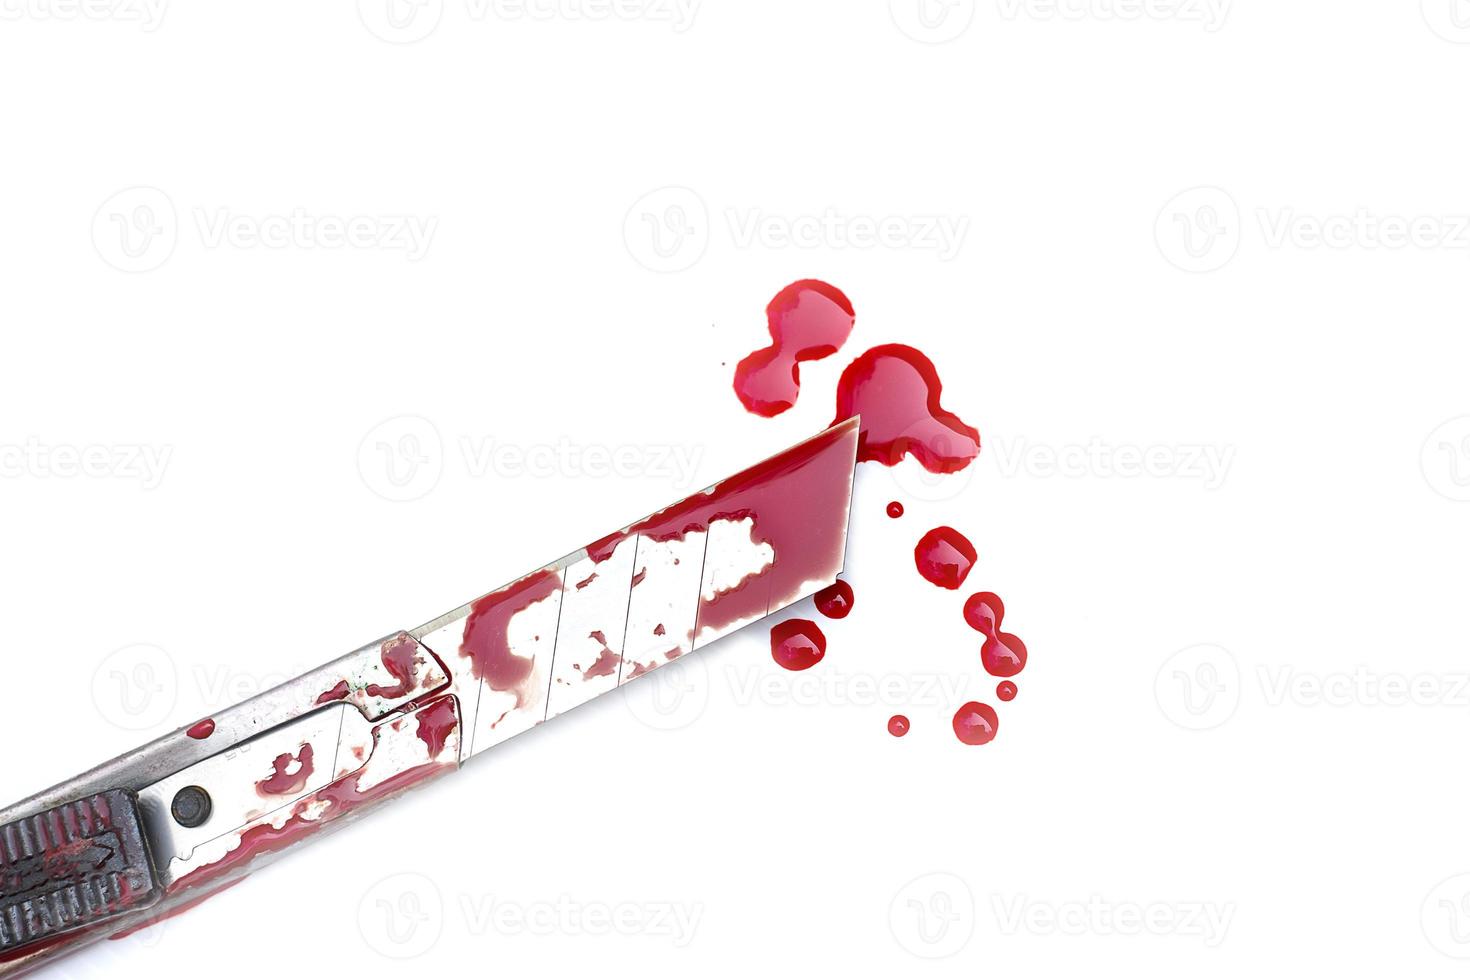 snijder mes bloedig op witte achtergrond, sociaal geweld halloween concept foto